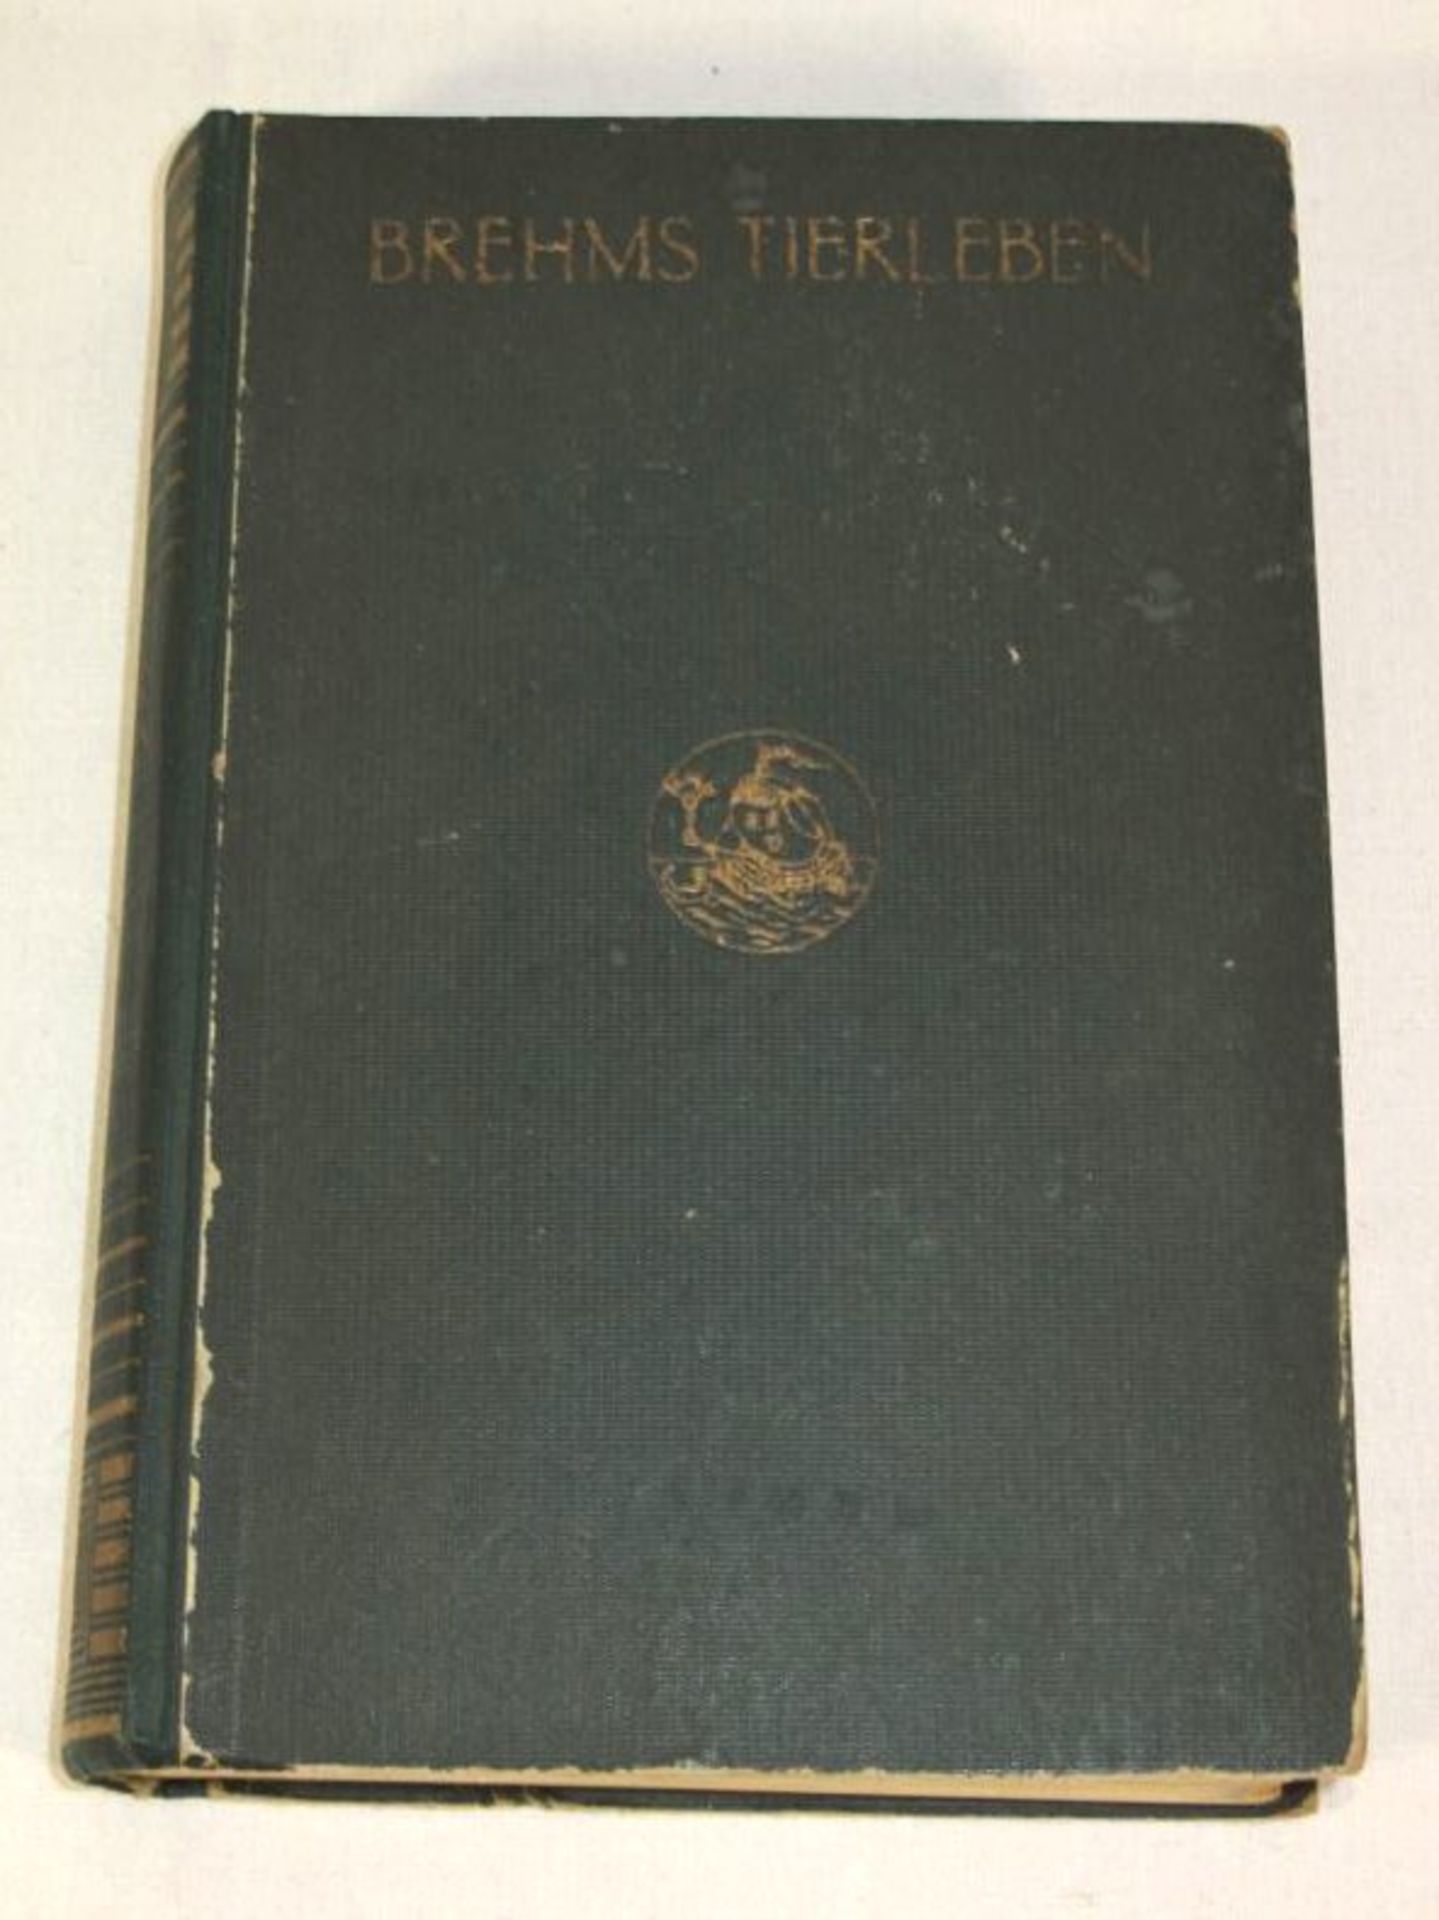 Brehms Tierleben, 3. Band Vögel, um 1920, Alters-u. Gebrauchsspuren.